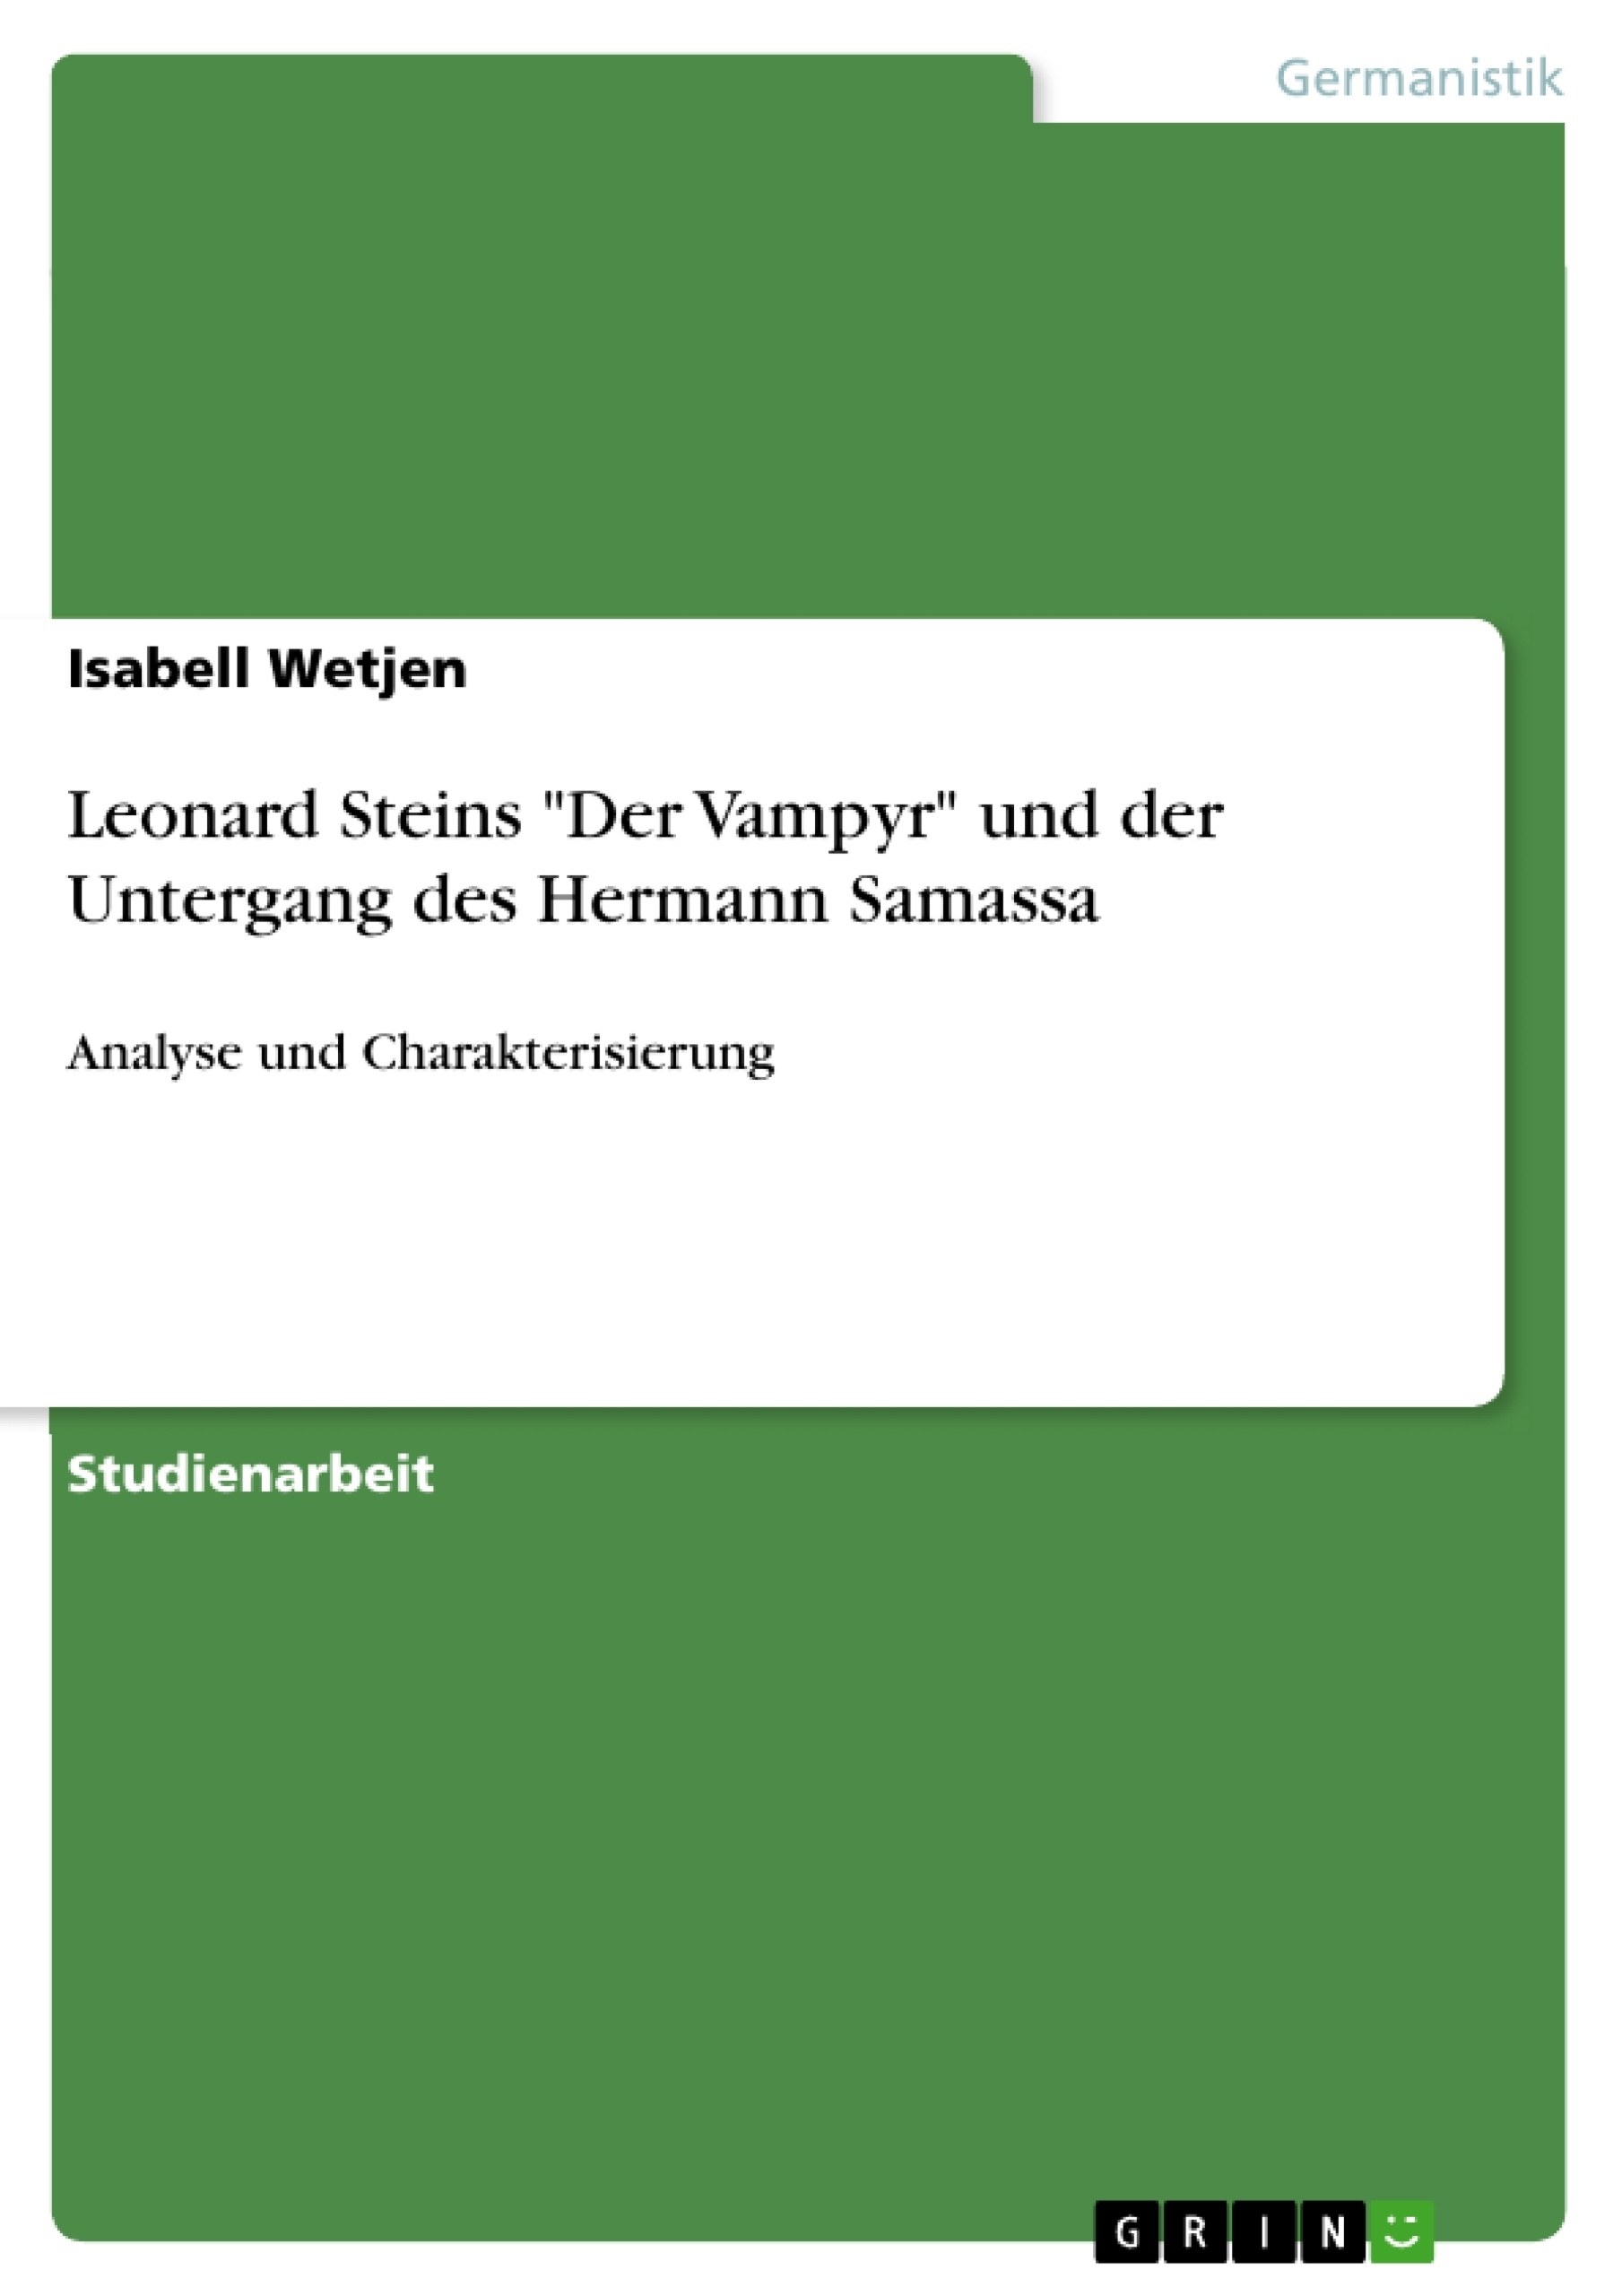 Título: Leonard Steins "Der Vampyr" und der Untergang des Hermann Samassa